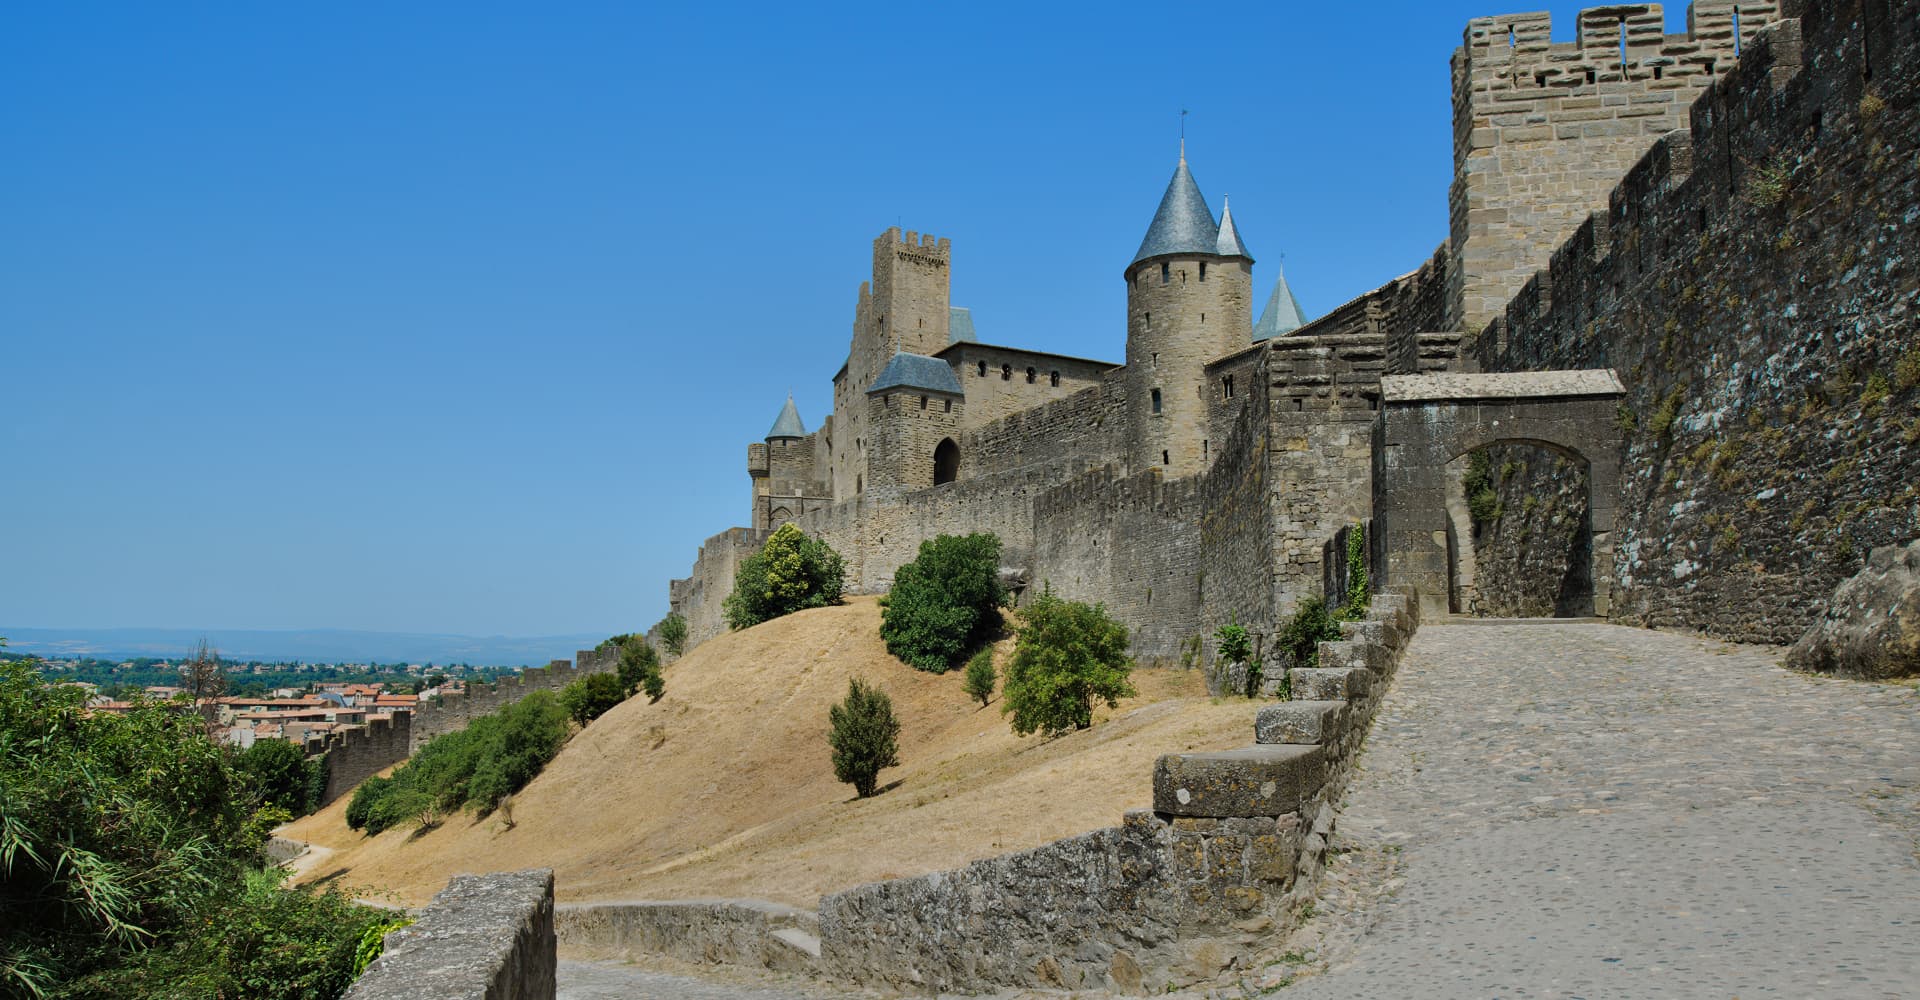 La Porte d'Aude et remparts de la Cité médiévale de Carcassonne (Aude, Pays cathare ; photographie : Philippe Contal, 2015)